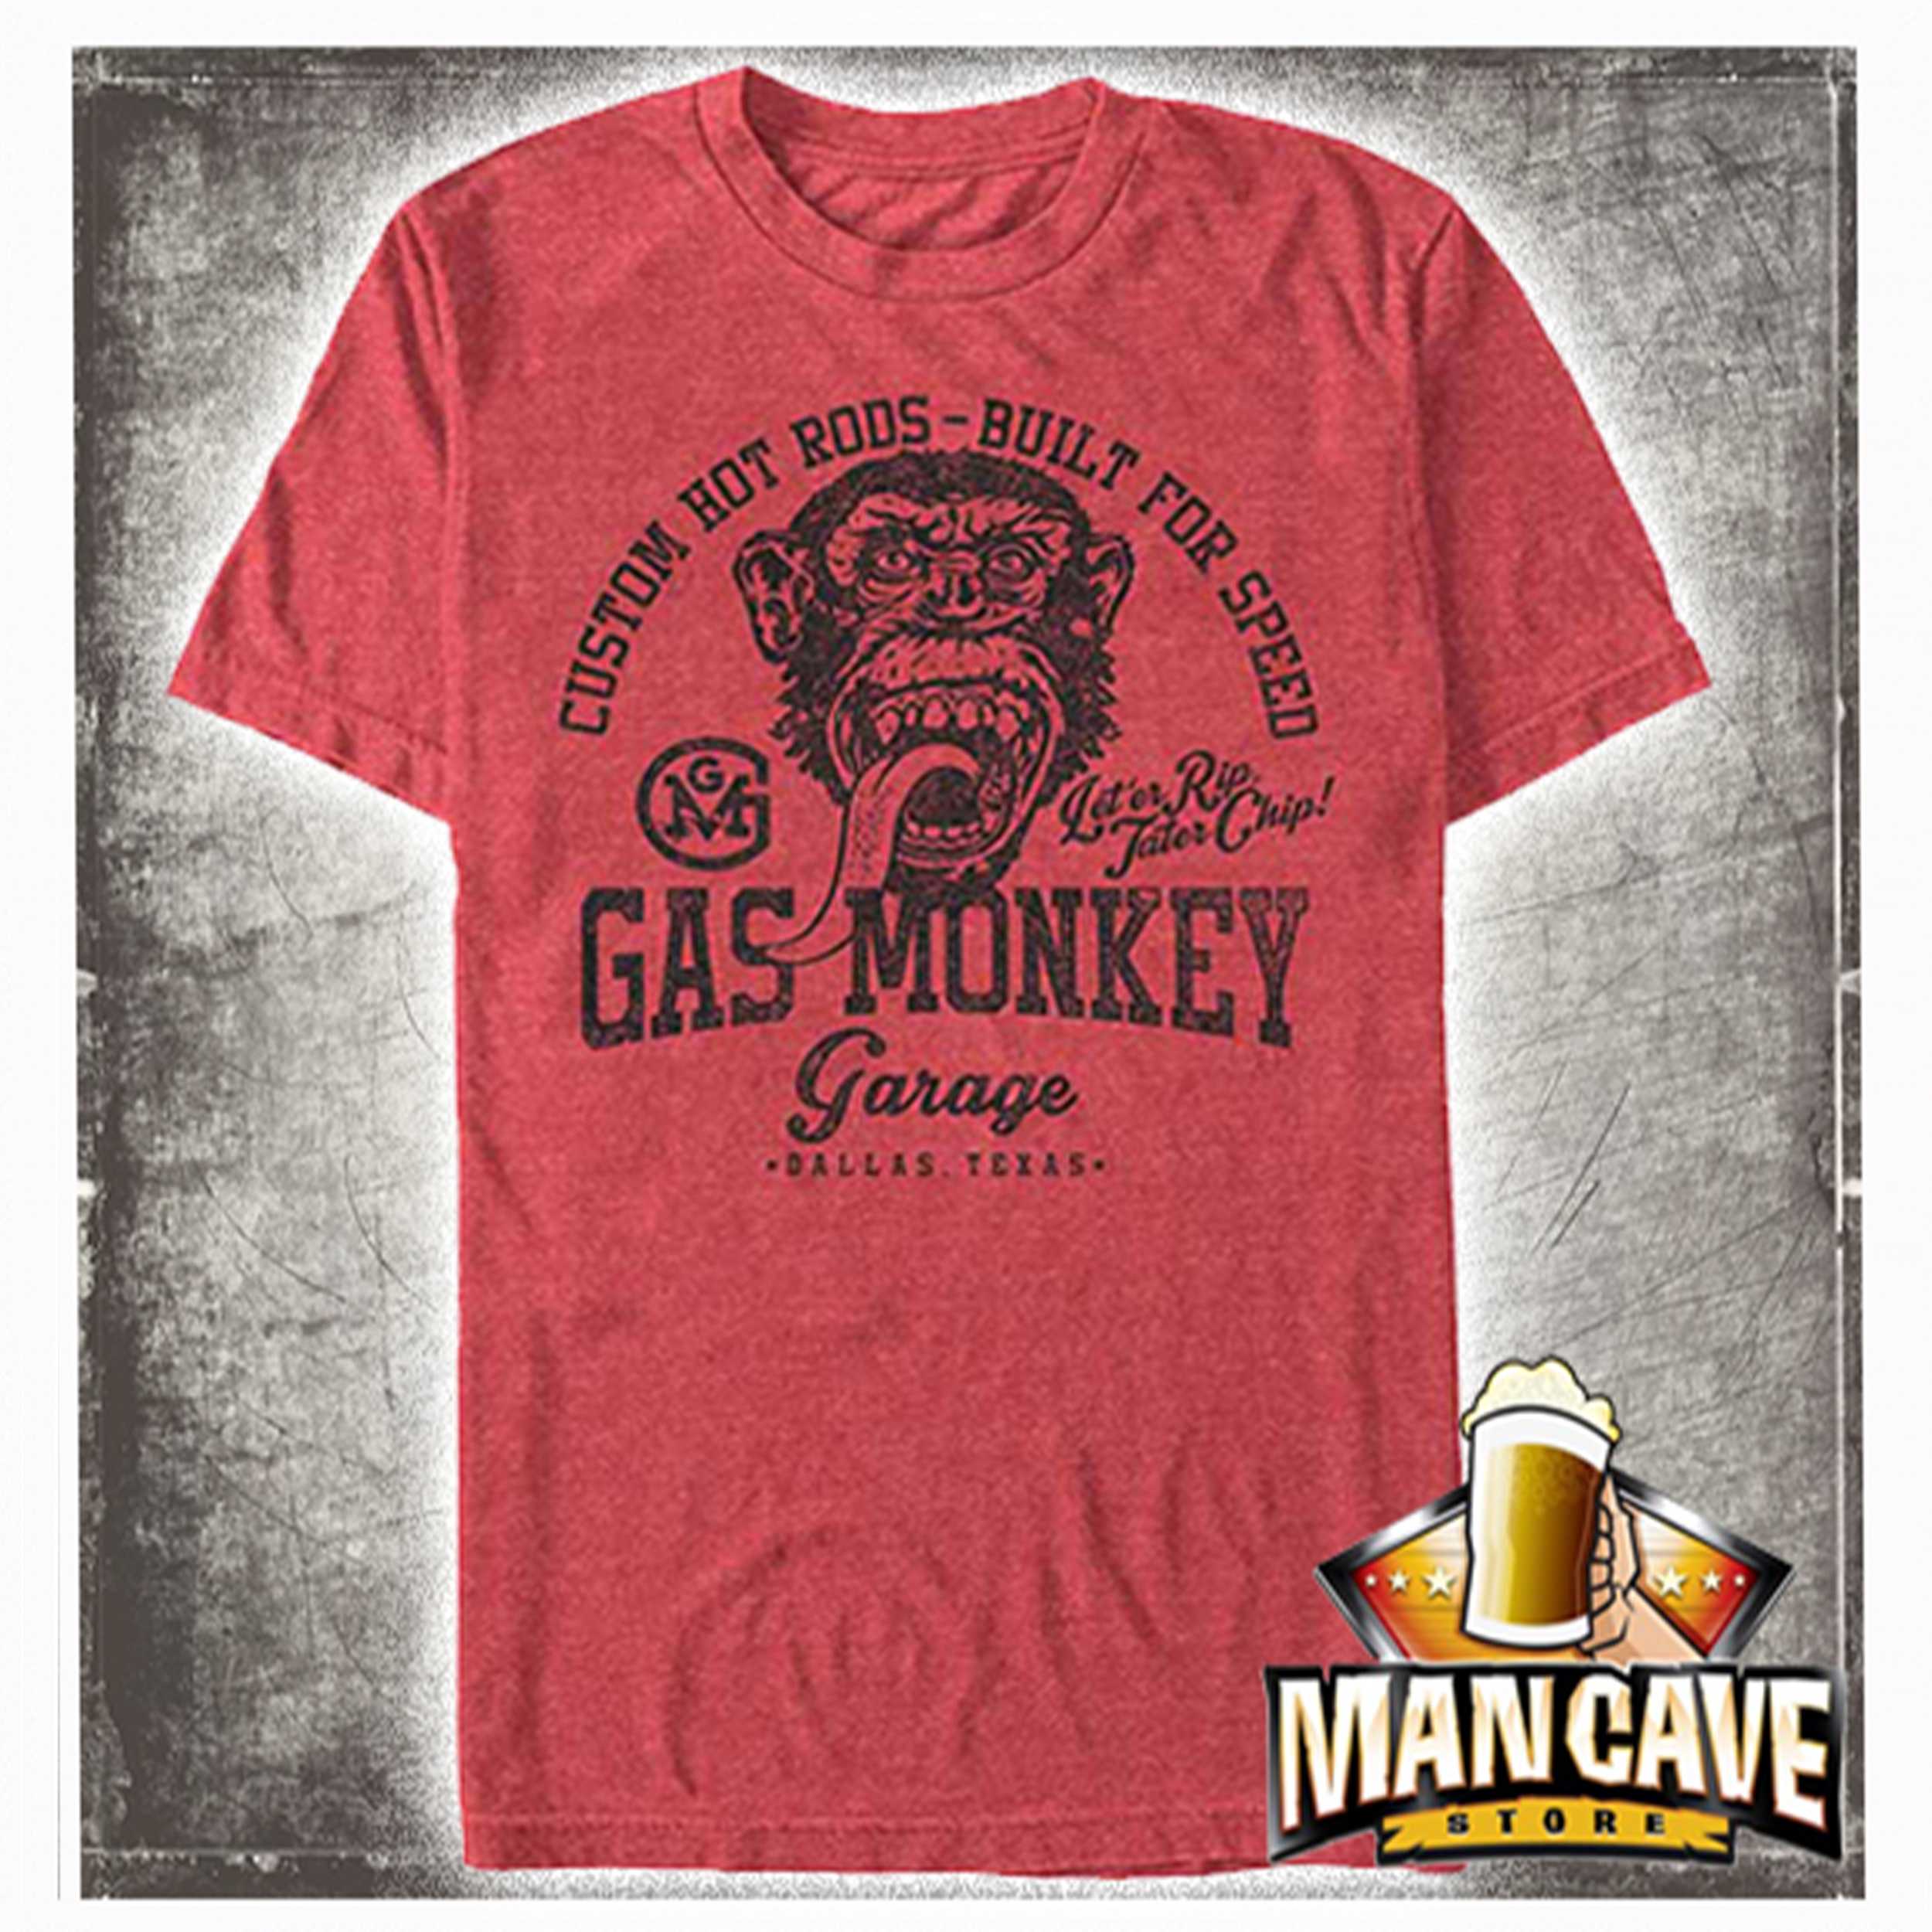 Gas Monkey Garage on Red Heather T-shirt